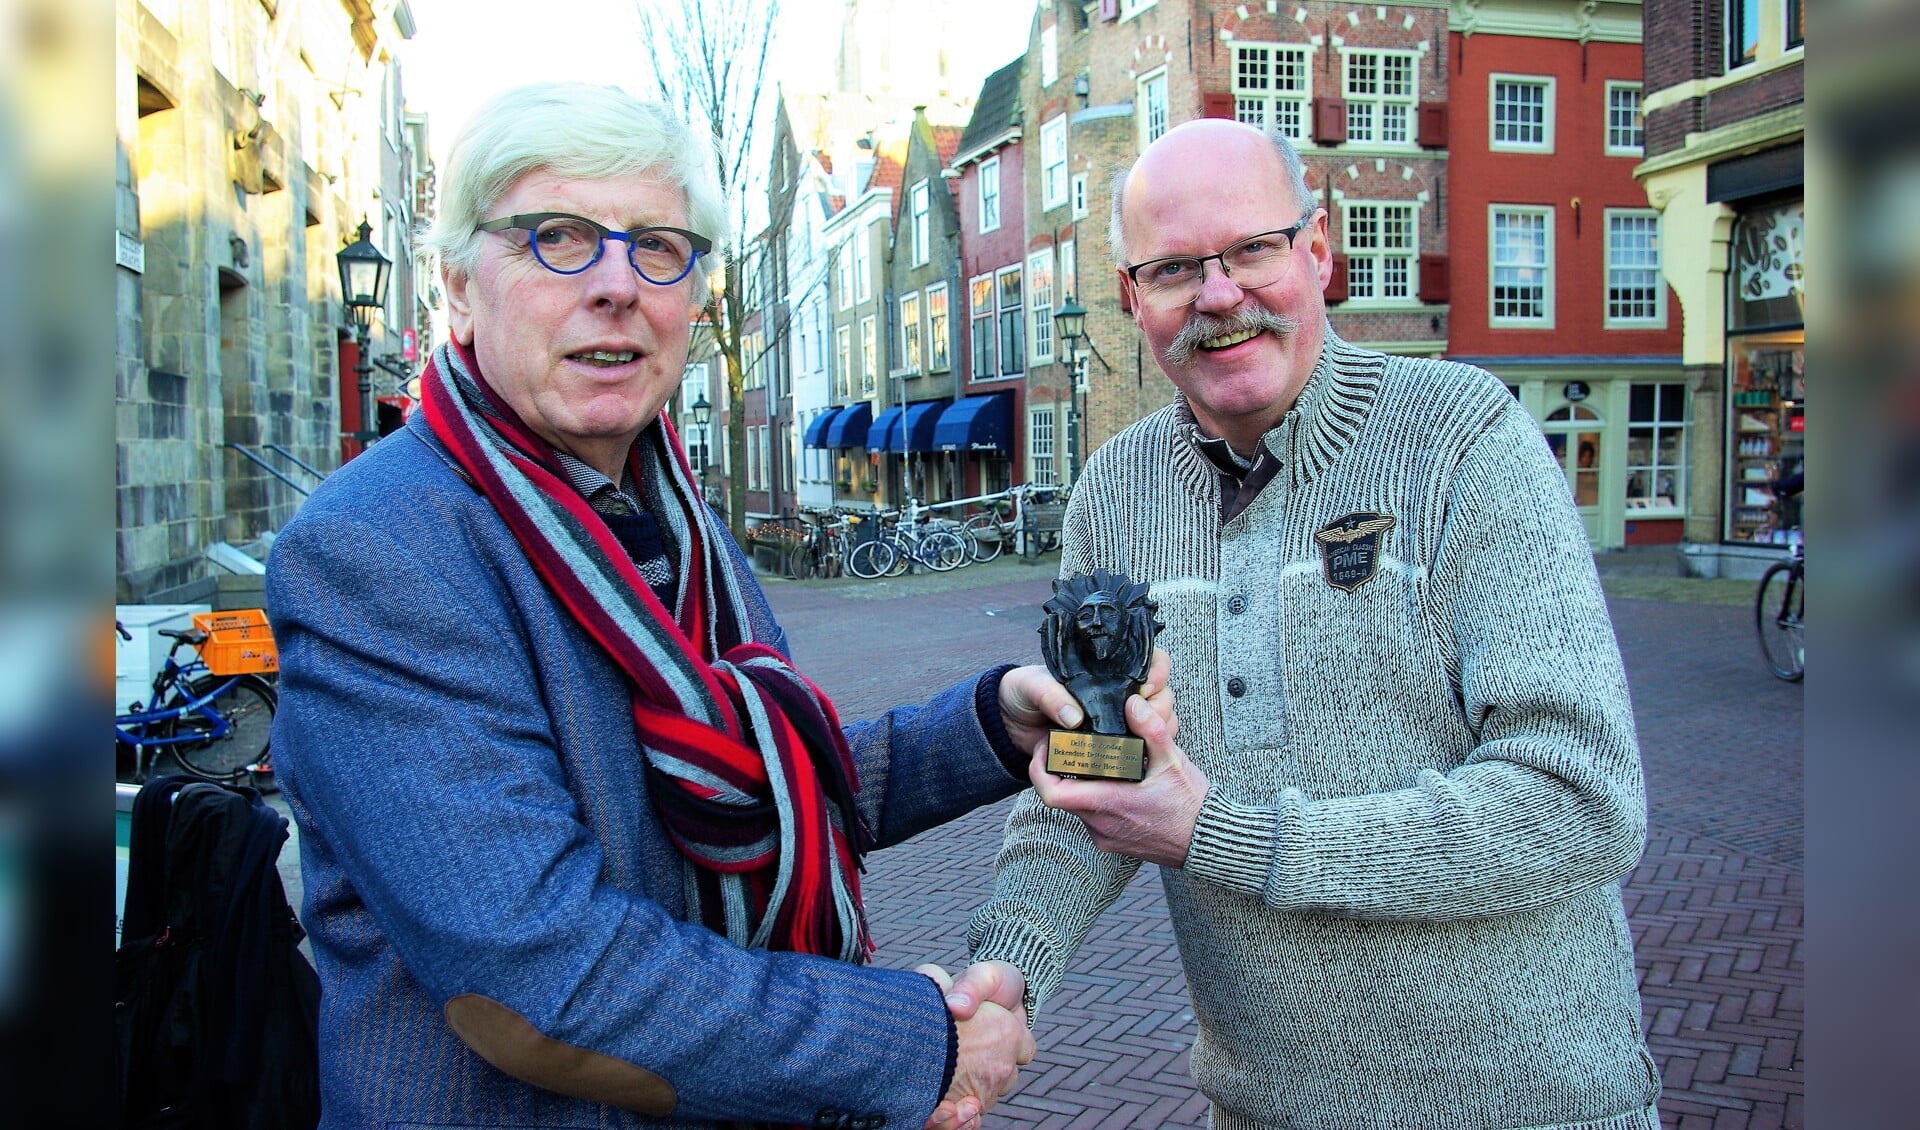 Bekendste Delftenaar 2016 Leo Quack reikt de prijs, een door Loes van der Holst ontworpen bronzen Hugo, uit aan zijn opvolger: Aad van der Hoeven. Aan wie mag Van der Hoeven deze prijs uitreiken? Mail de naam van uw Bekendste Delftenaar naar bekendstedelftenaar@delftopzondag.nl. 